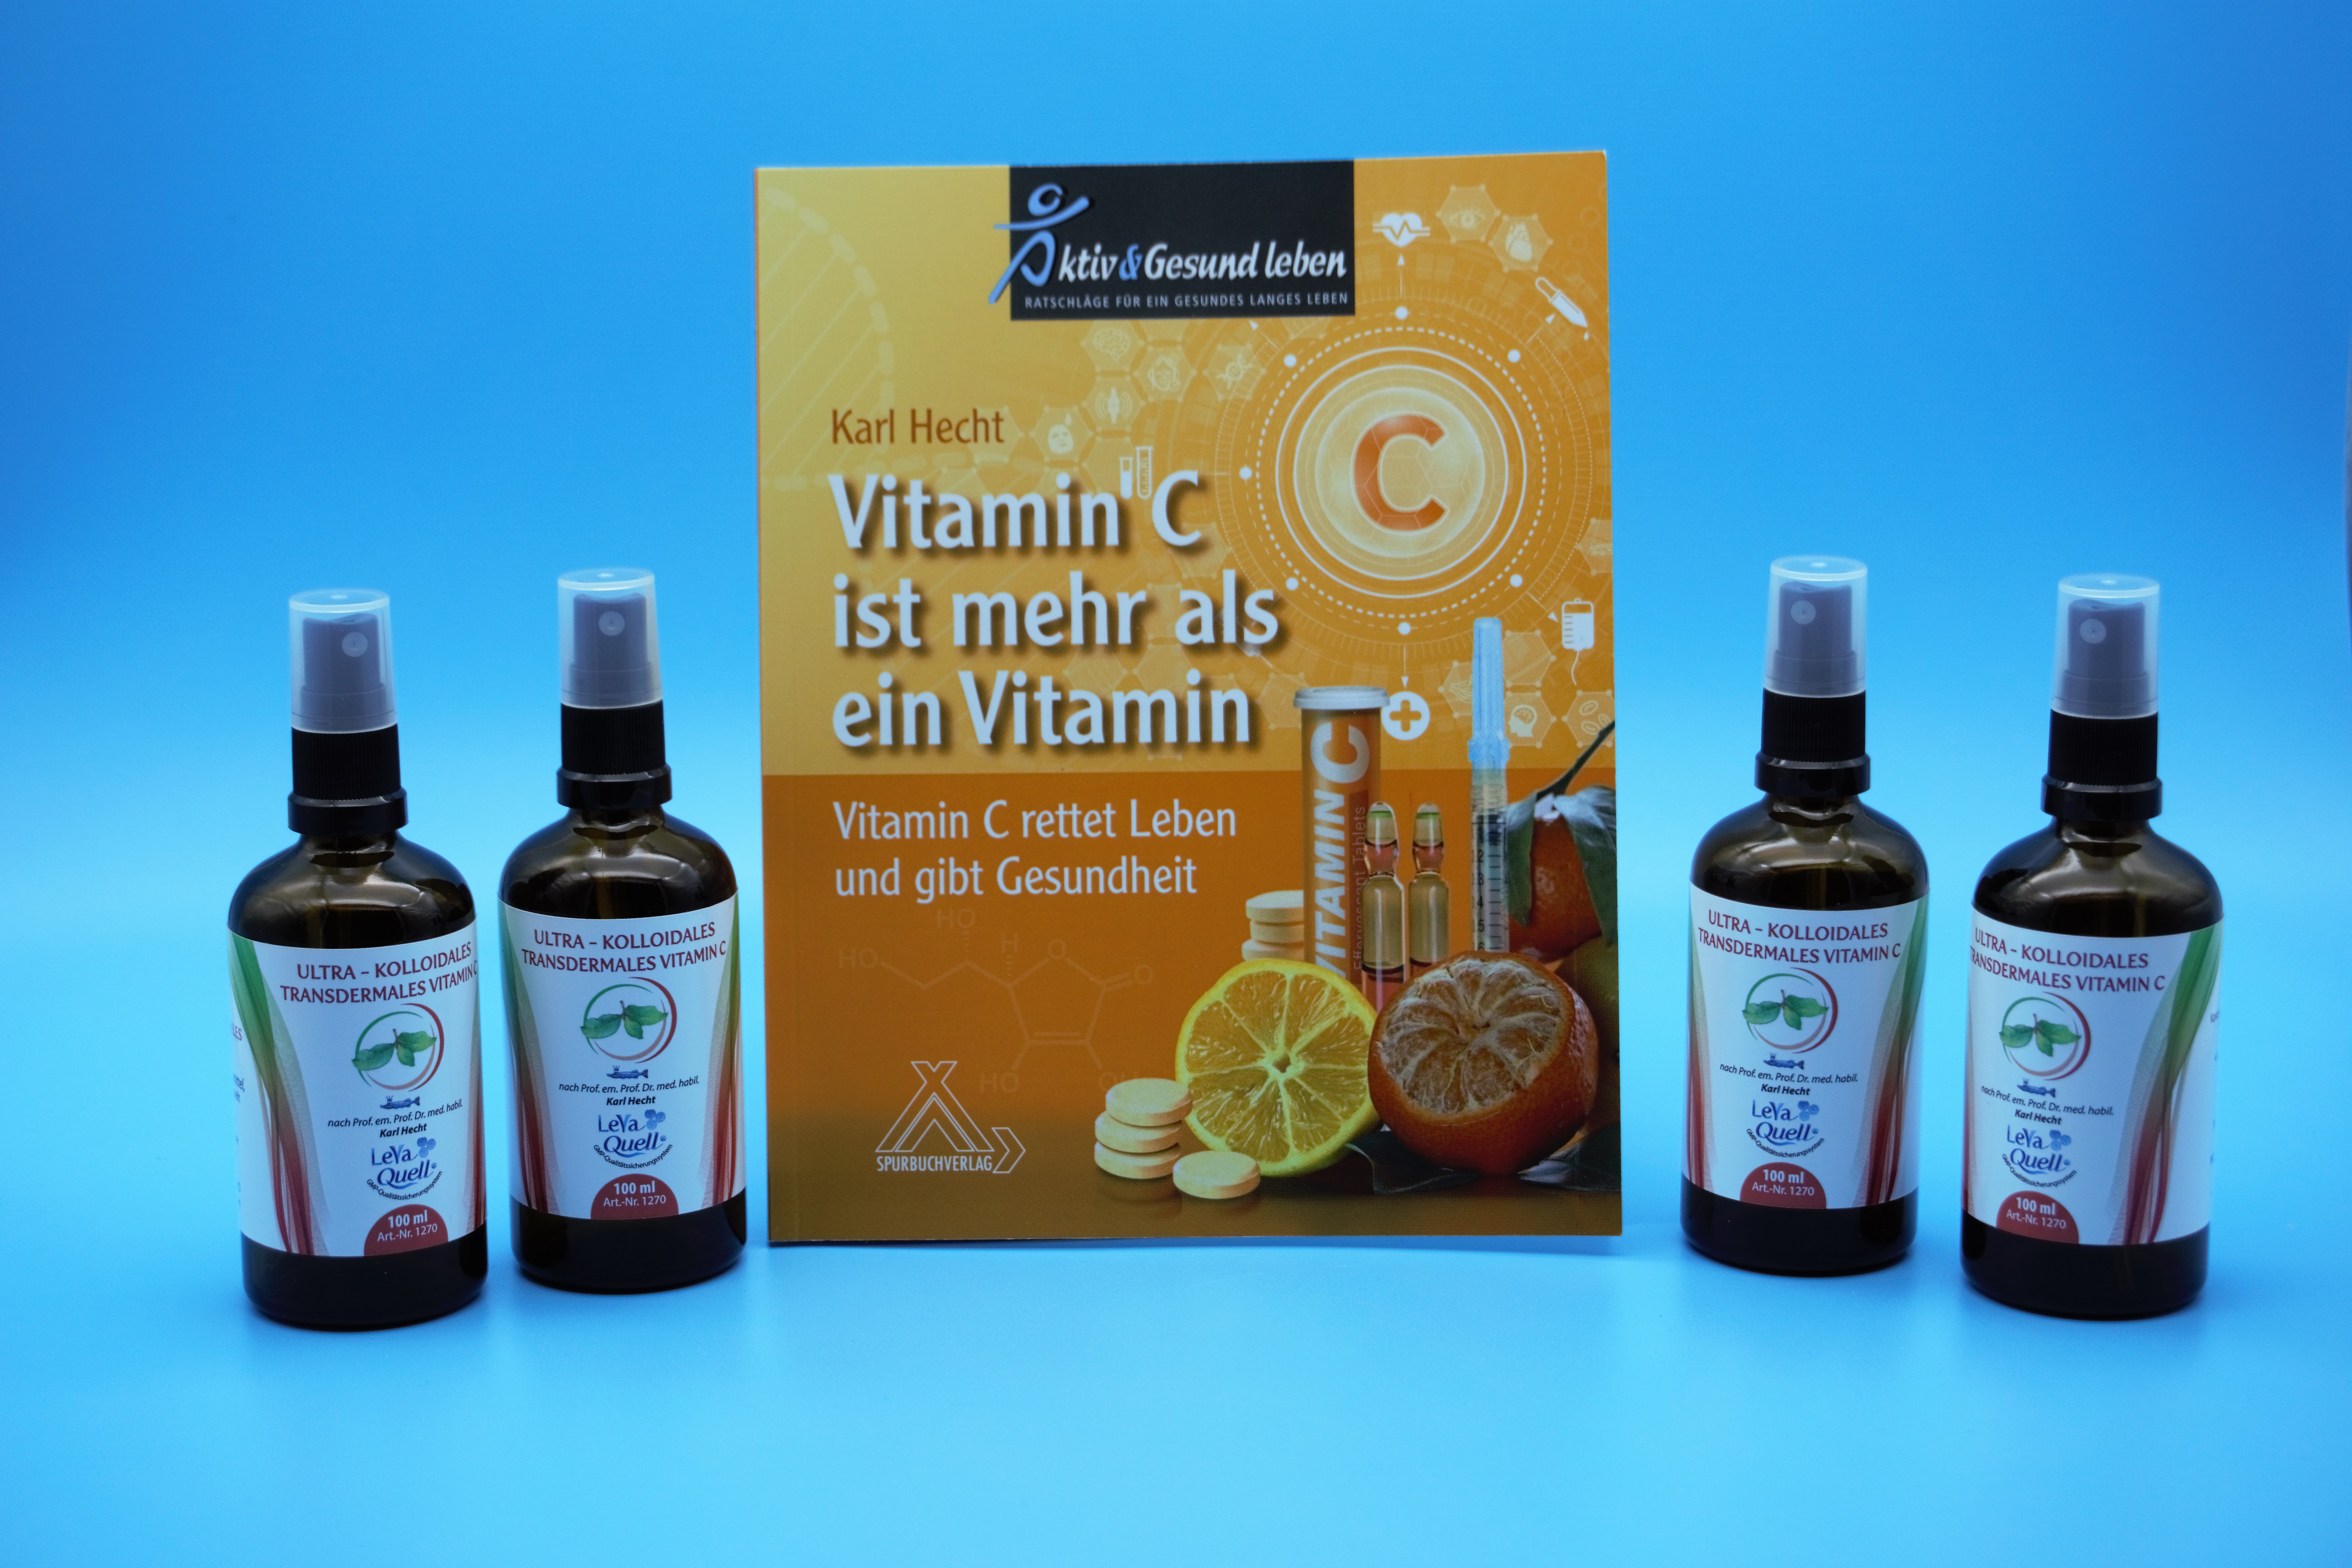 4 Flaschen Vitamin C 100ml mit Spraykopf Braunglas-Flasche zzgl. 1 x Vitamin C Buch gratis